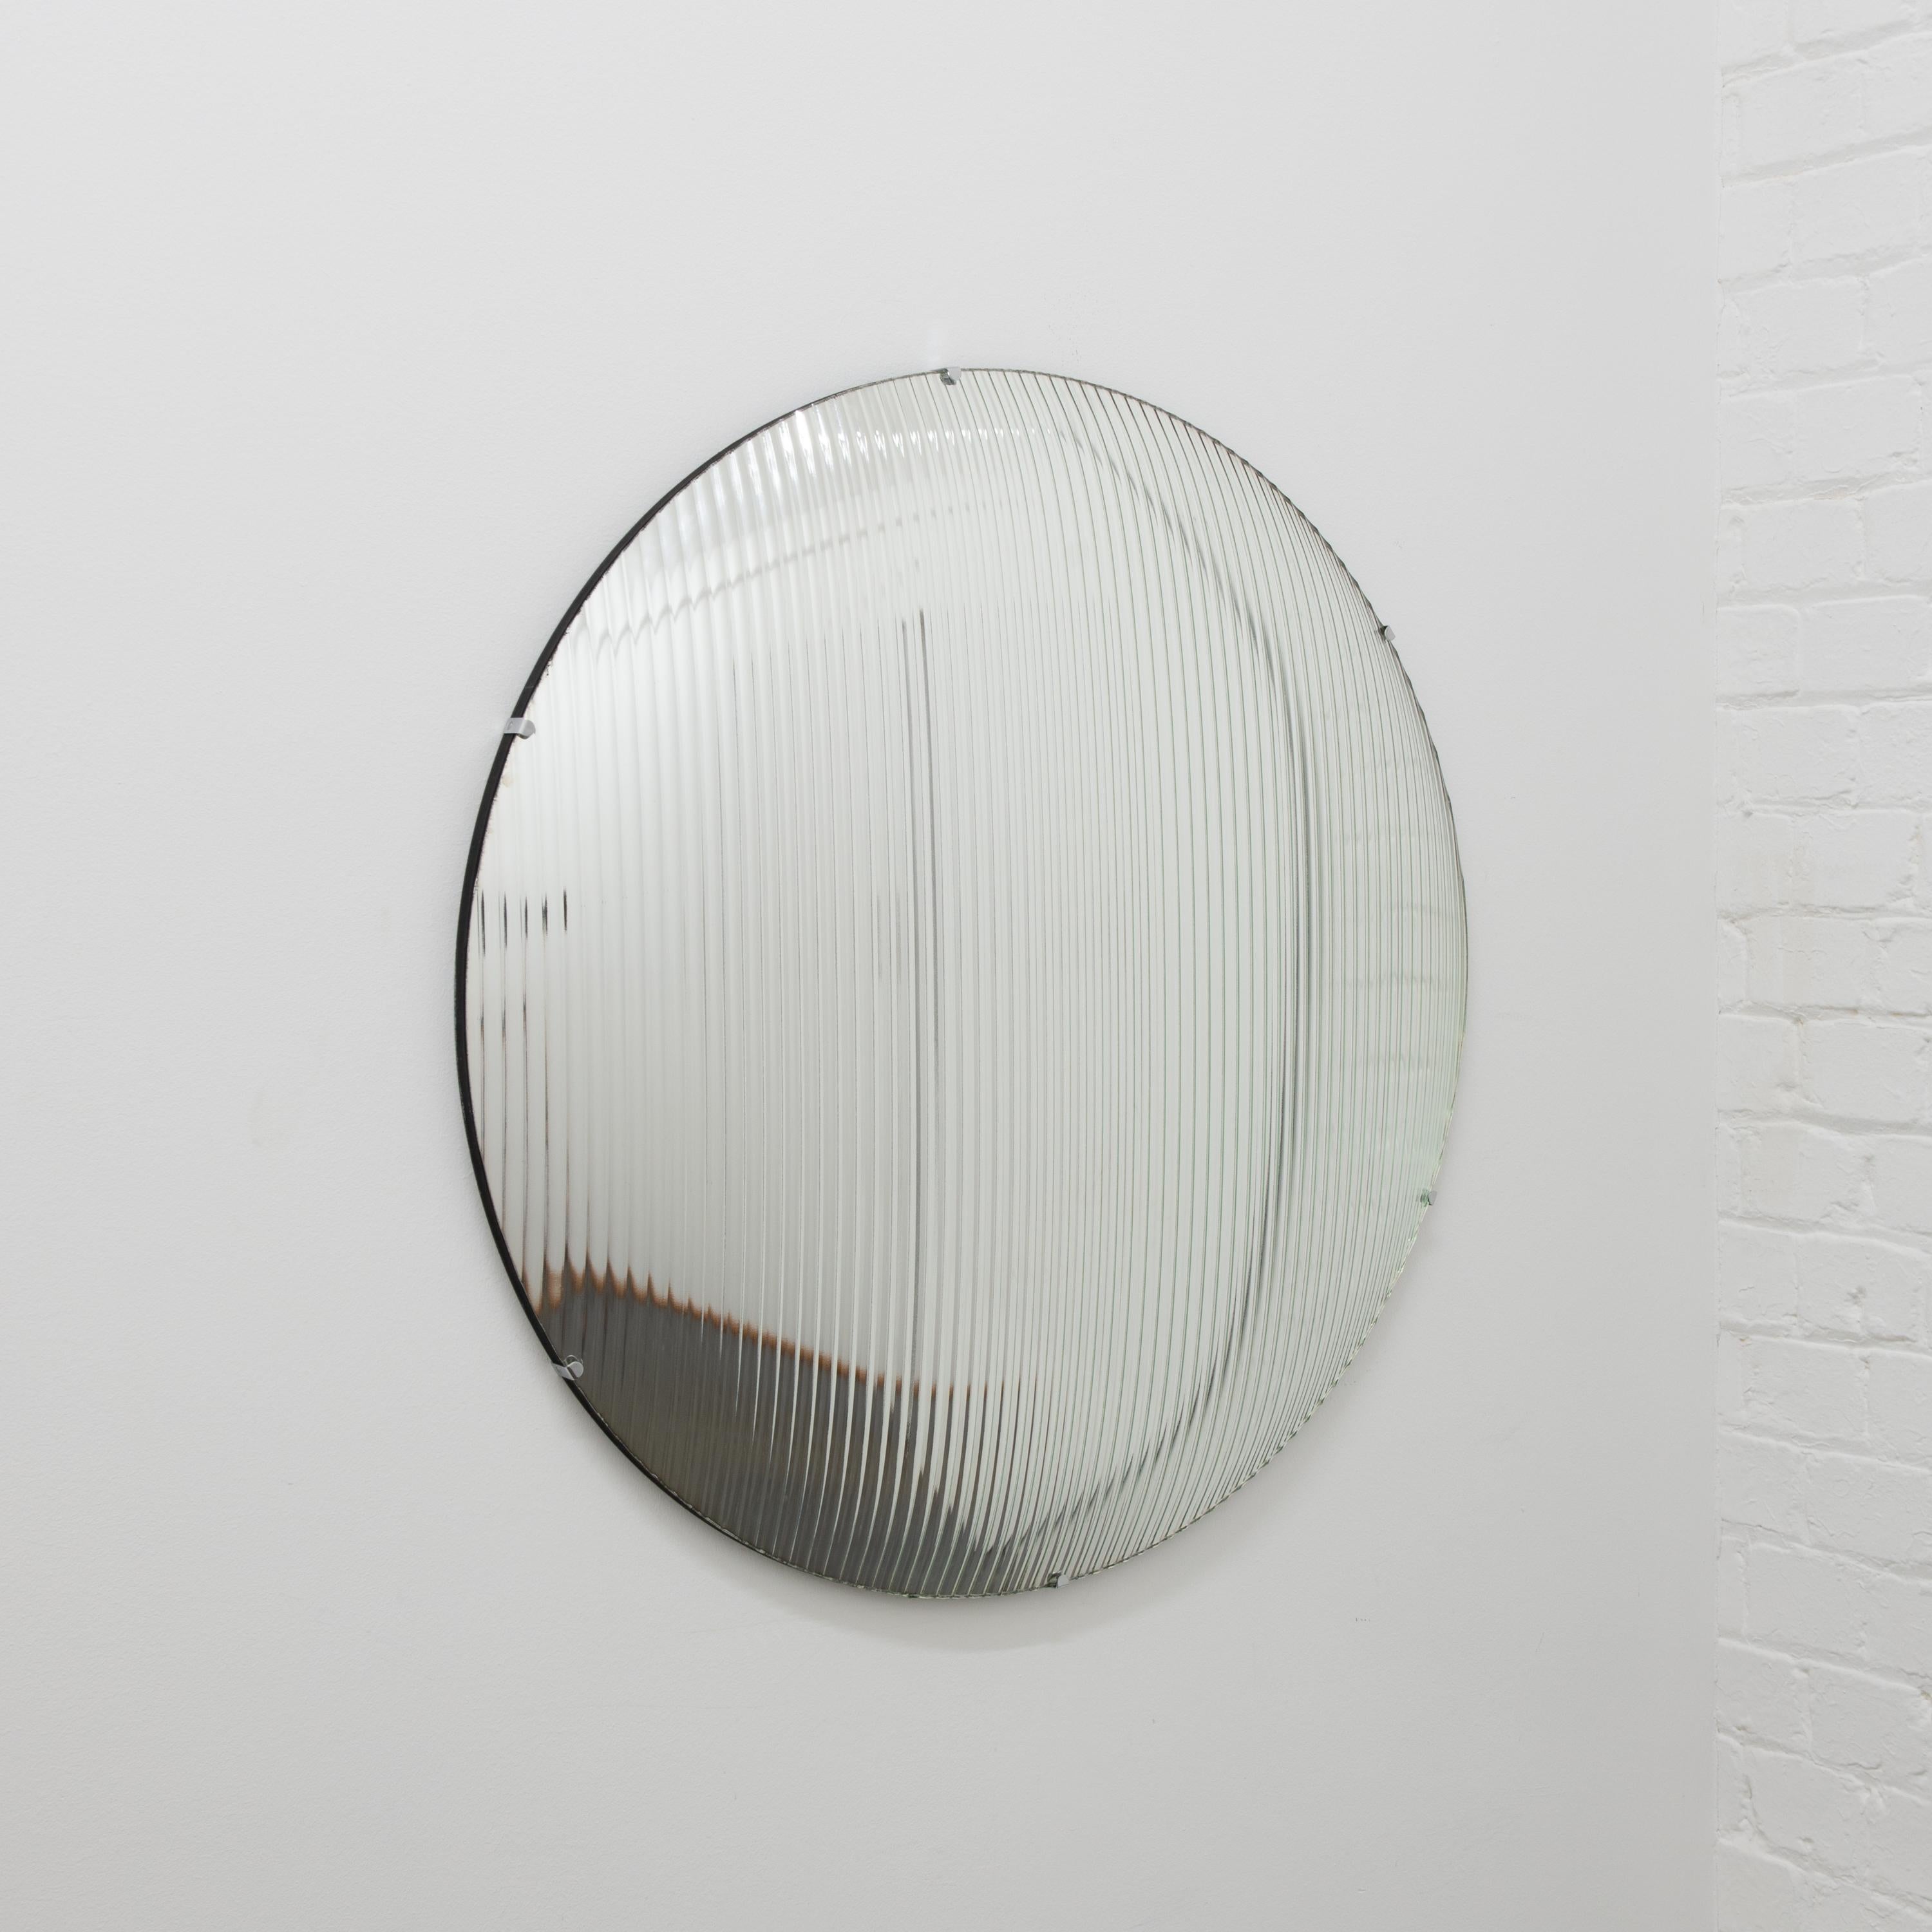 Miroir rond convexe sans cadre en verre roseau avec des clips en acier inoxydable.

Chaque miroir convexe Orbis™ est conçu et fabriqué à la main à Londres, au Royaume-Uni. De légères variations de taille et des imperfections sur les bords et les